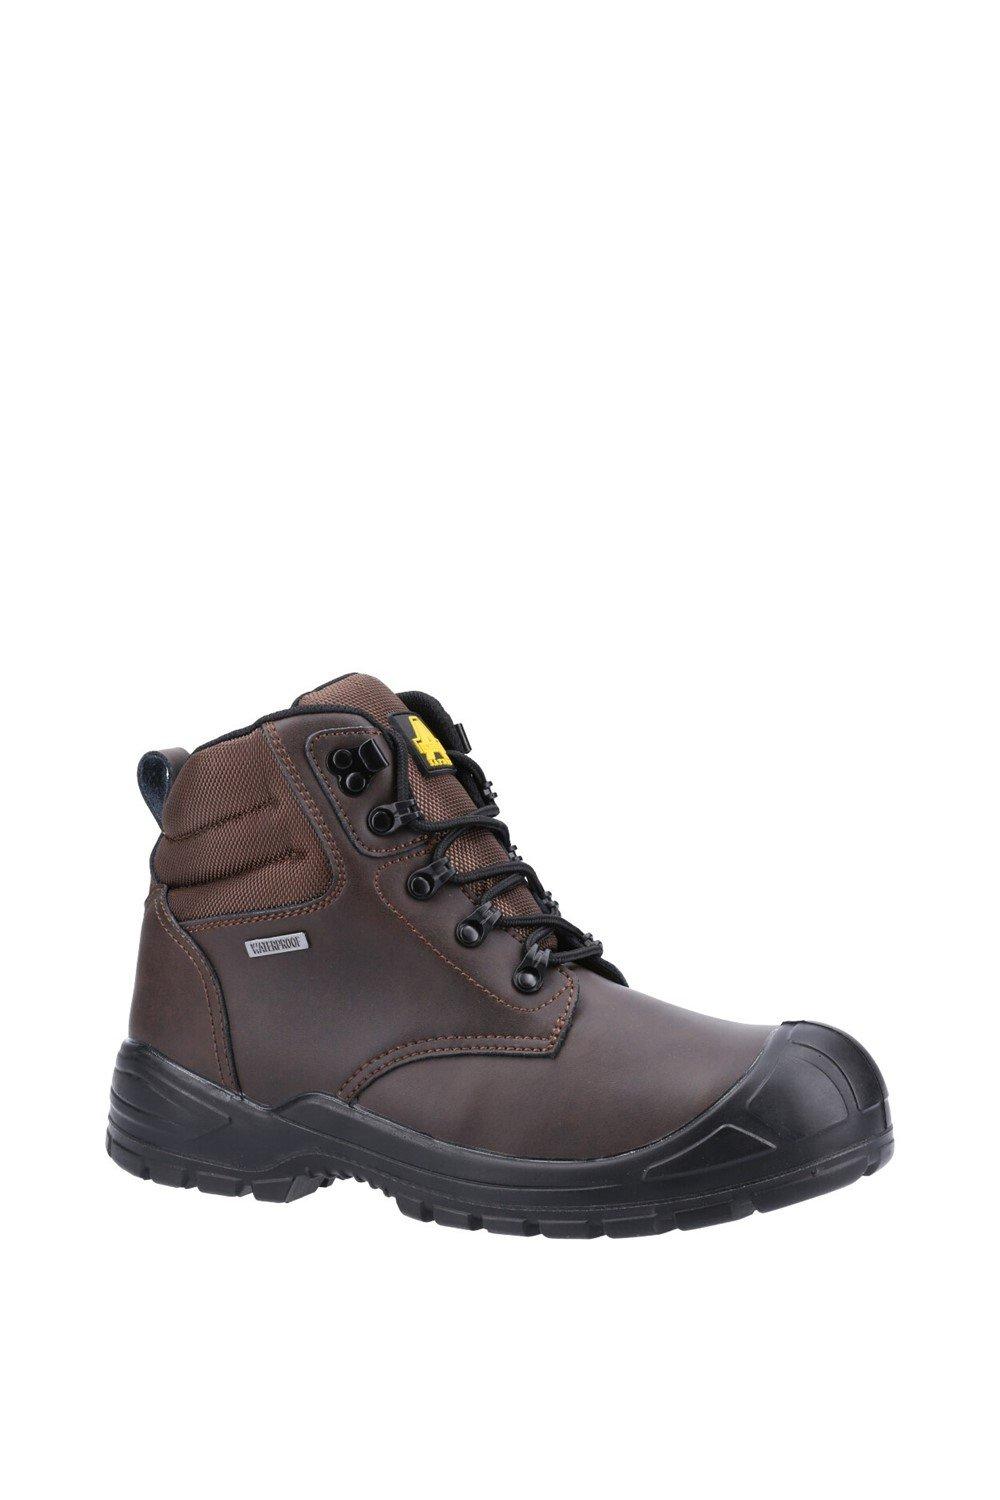 Защитные ботинки '241' Amblers Safety, коричневый ботинки мужские рабочие со стальным носком легкие защитные нескользящие дышащие кроссовки для строительства стальной носок